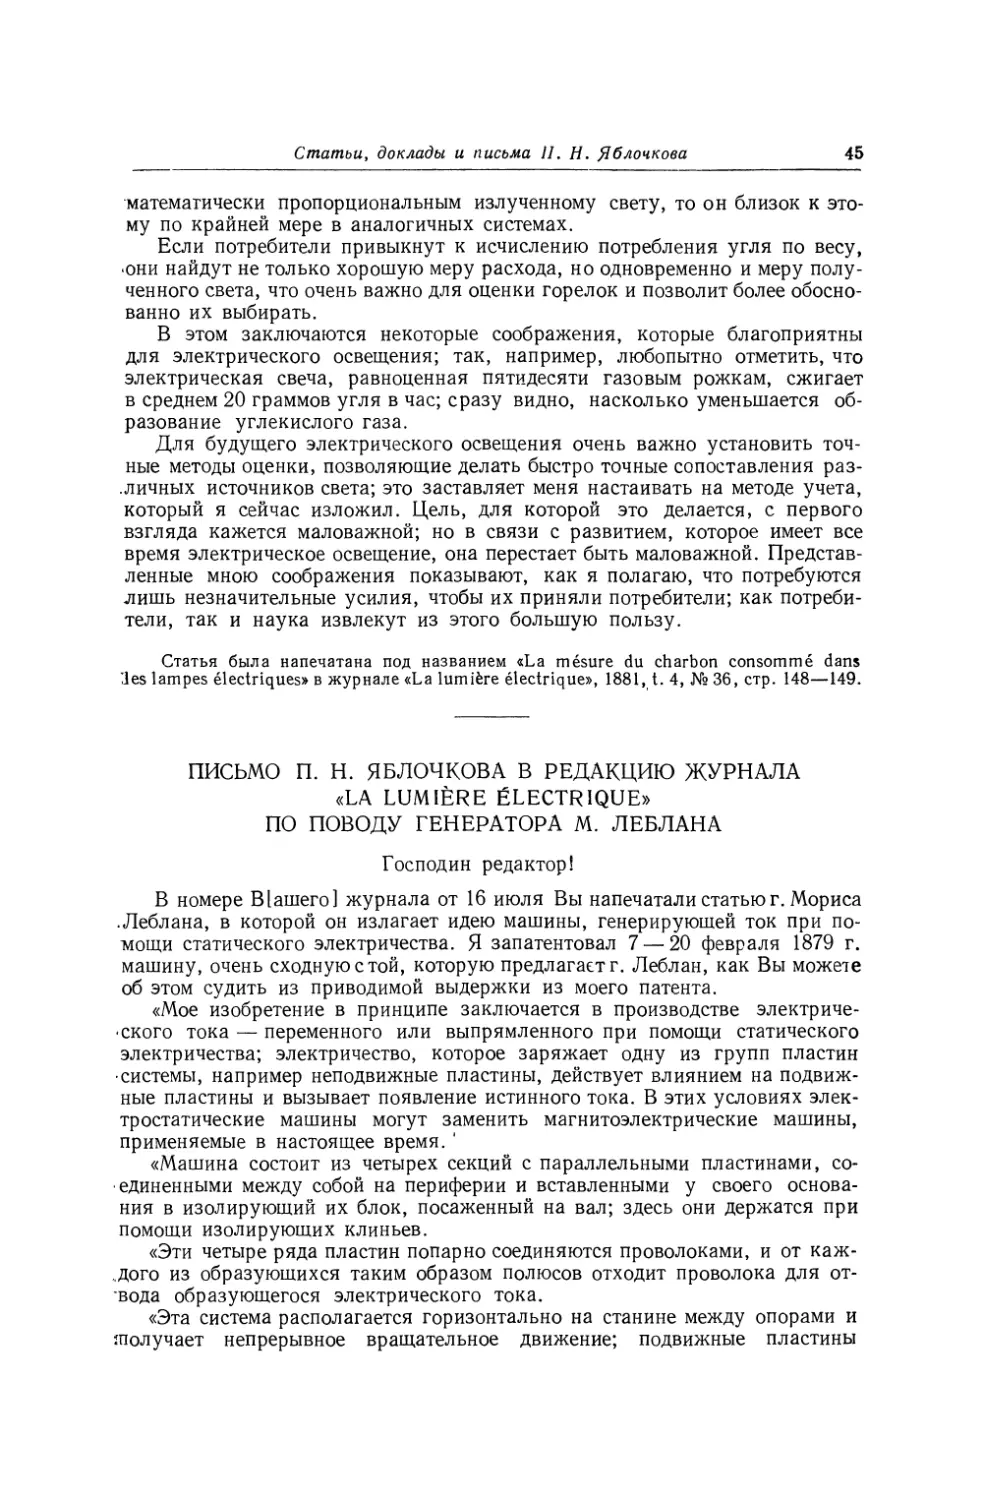 Письмо П. Н. Яблочкова в редакцию журнала «La lumiere electrique» по поводу генератора М. Леблана